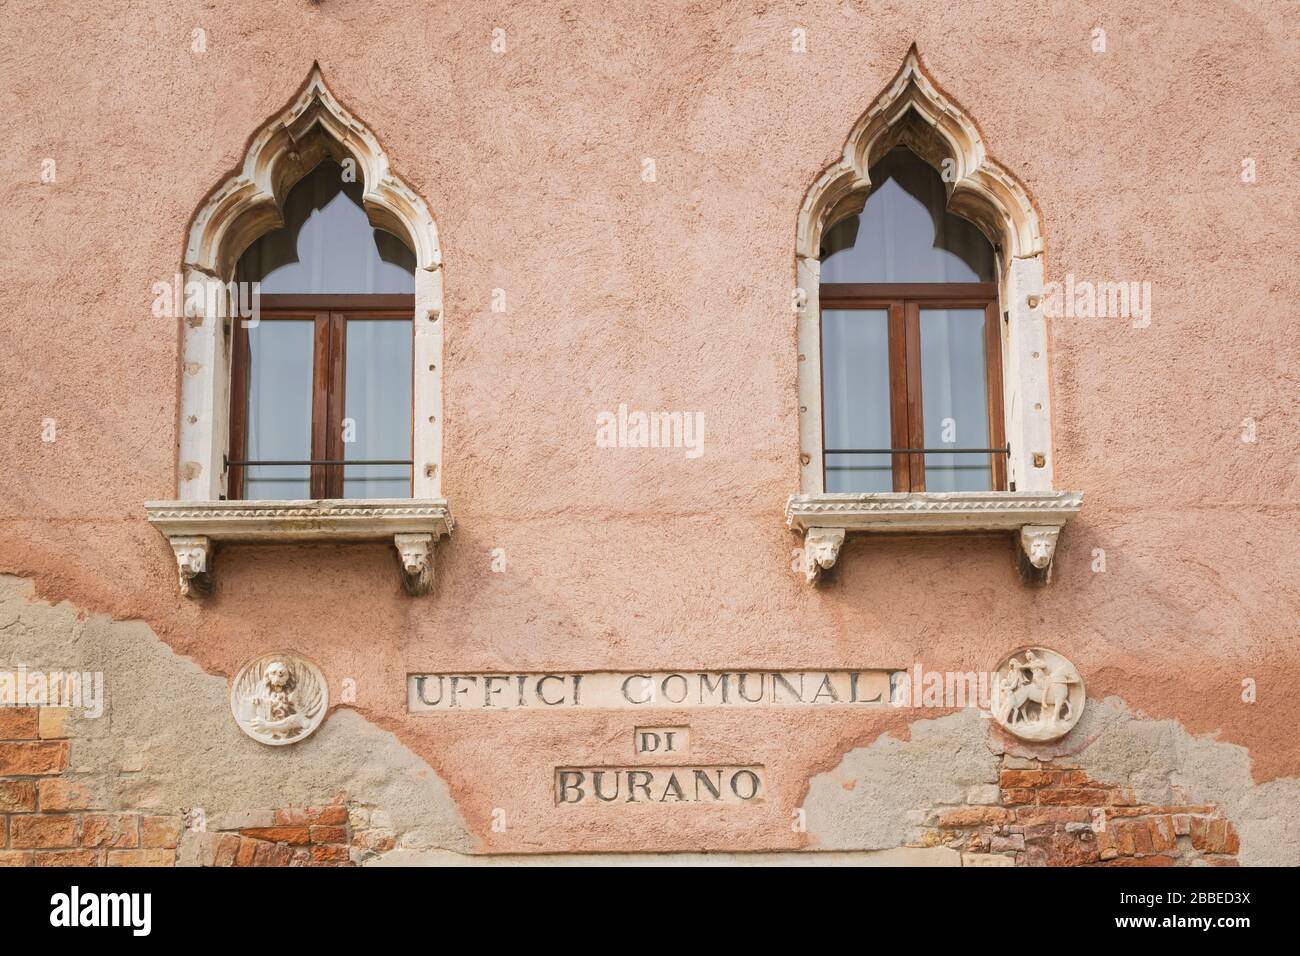 Uffici Comuni di Burano facciata edificio con finestre in stile architettonico moresco, Isola di Burano, Laguna di Venezia, Veneto, Italia Foto Stock